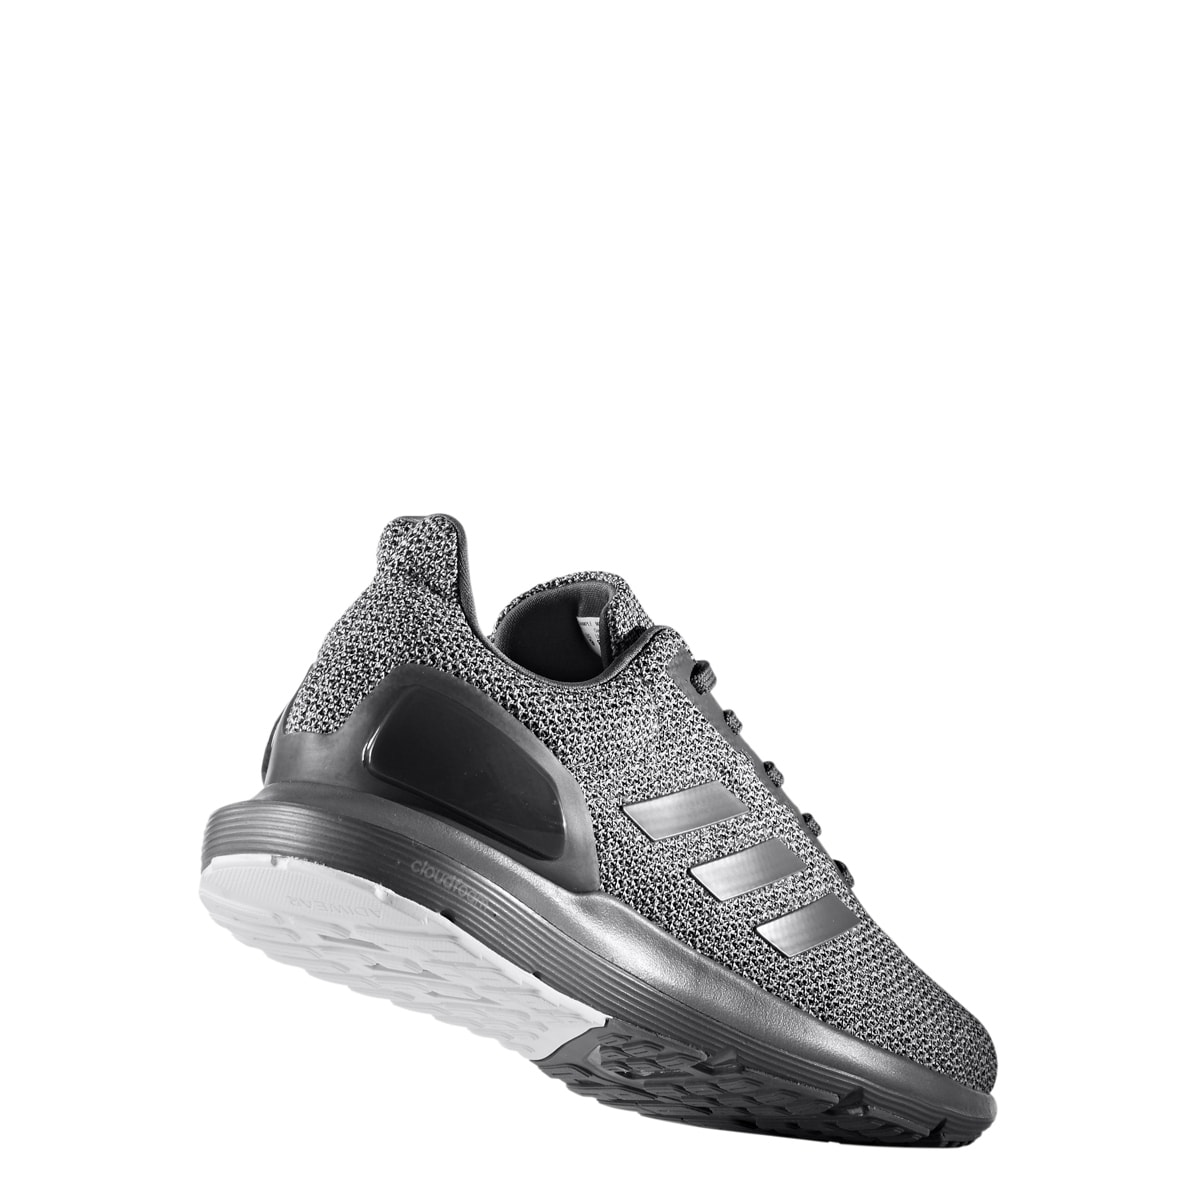 adidas men's cosmic 2 sl m running shoe